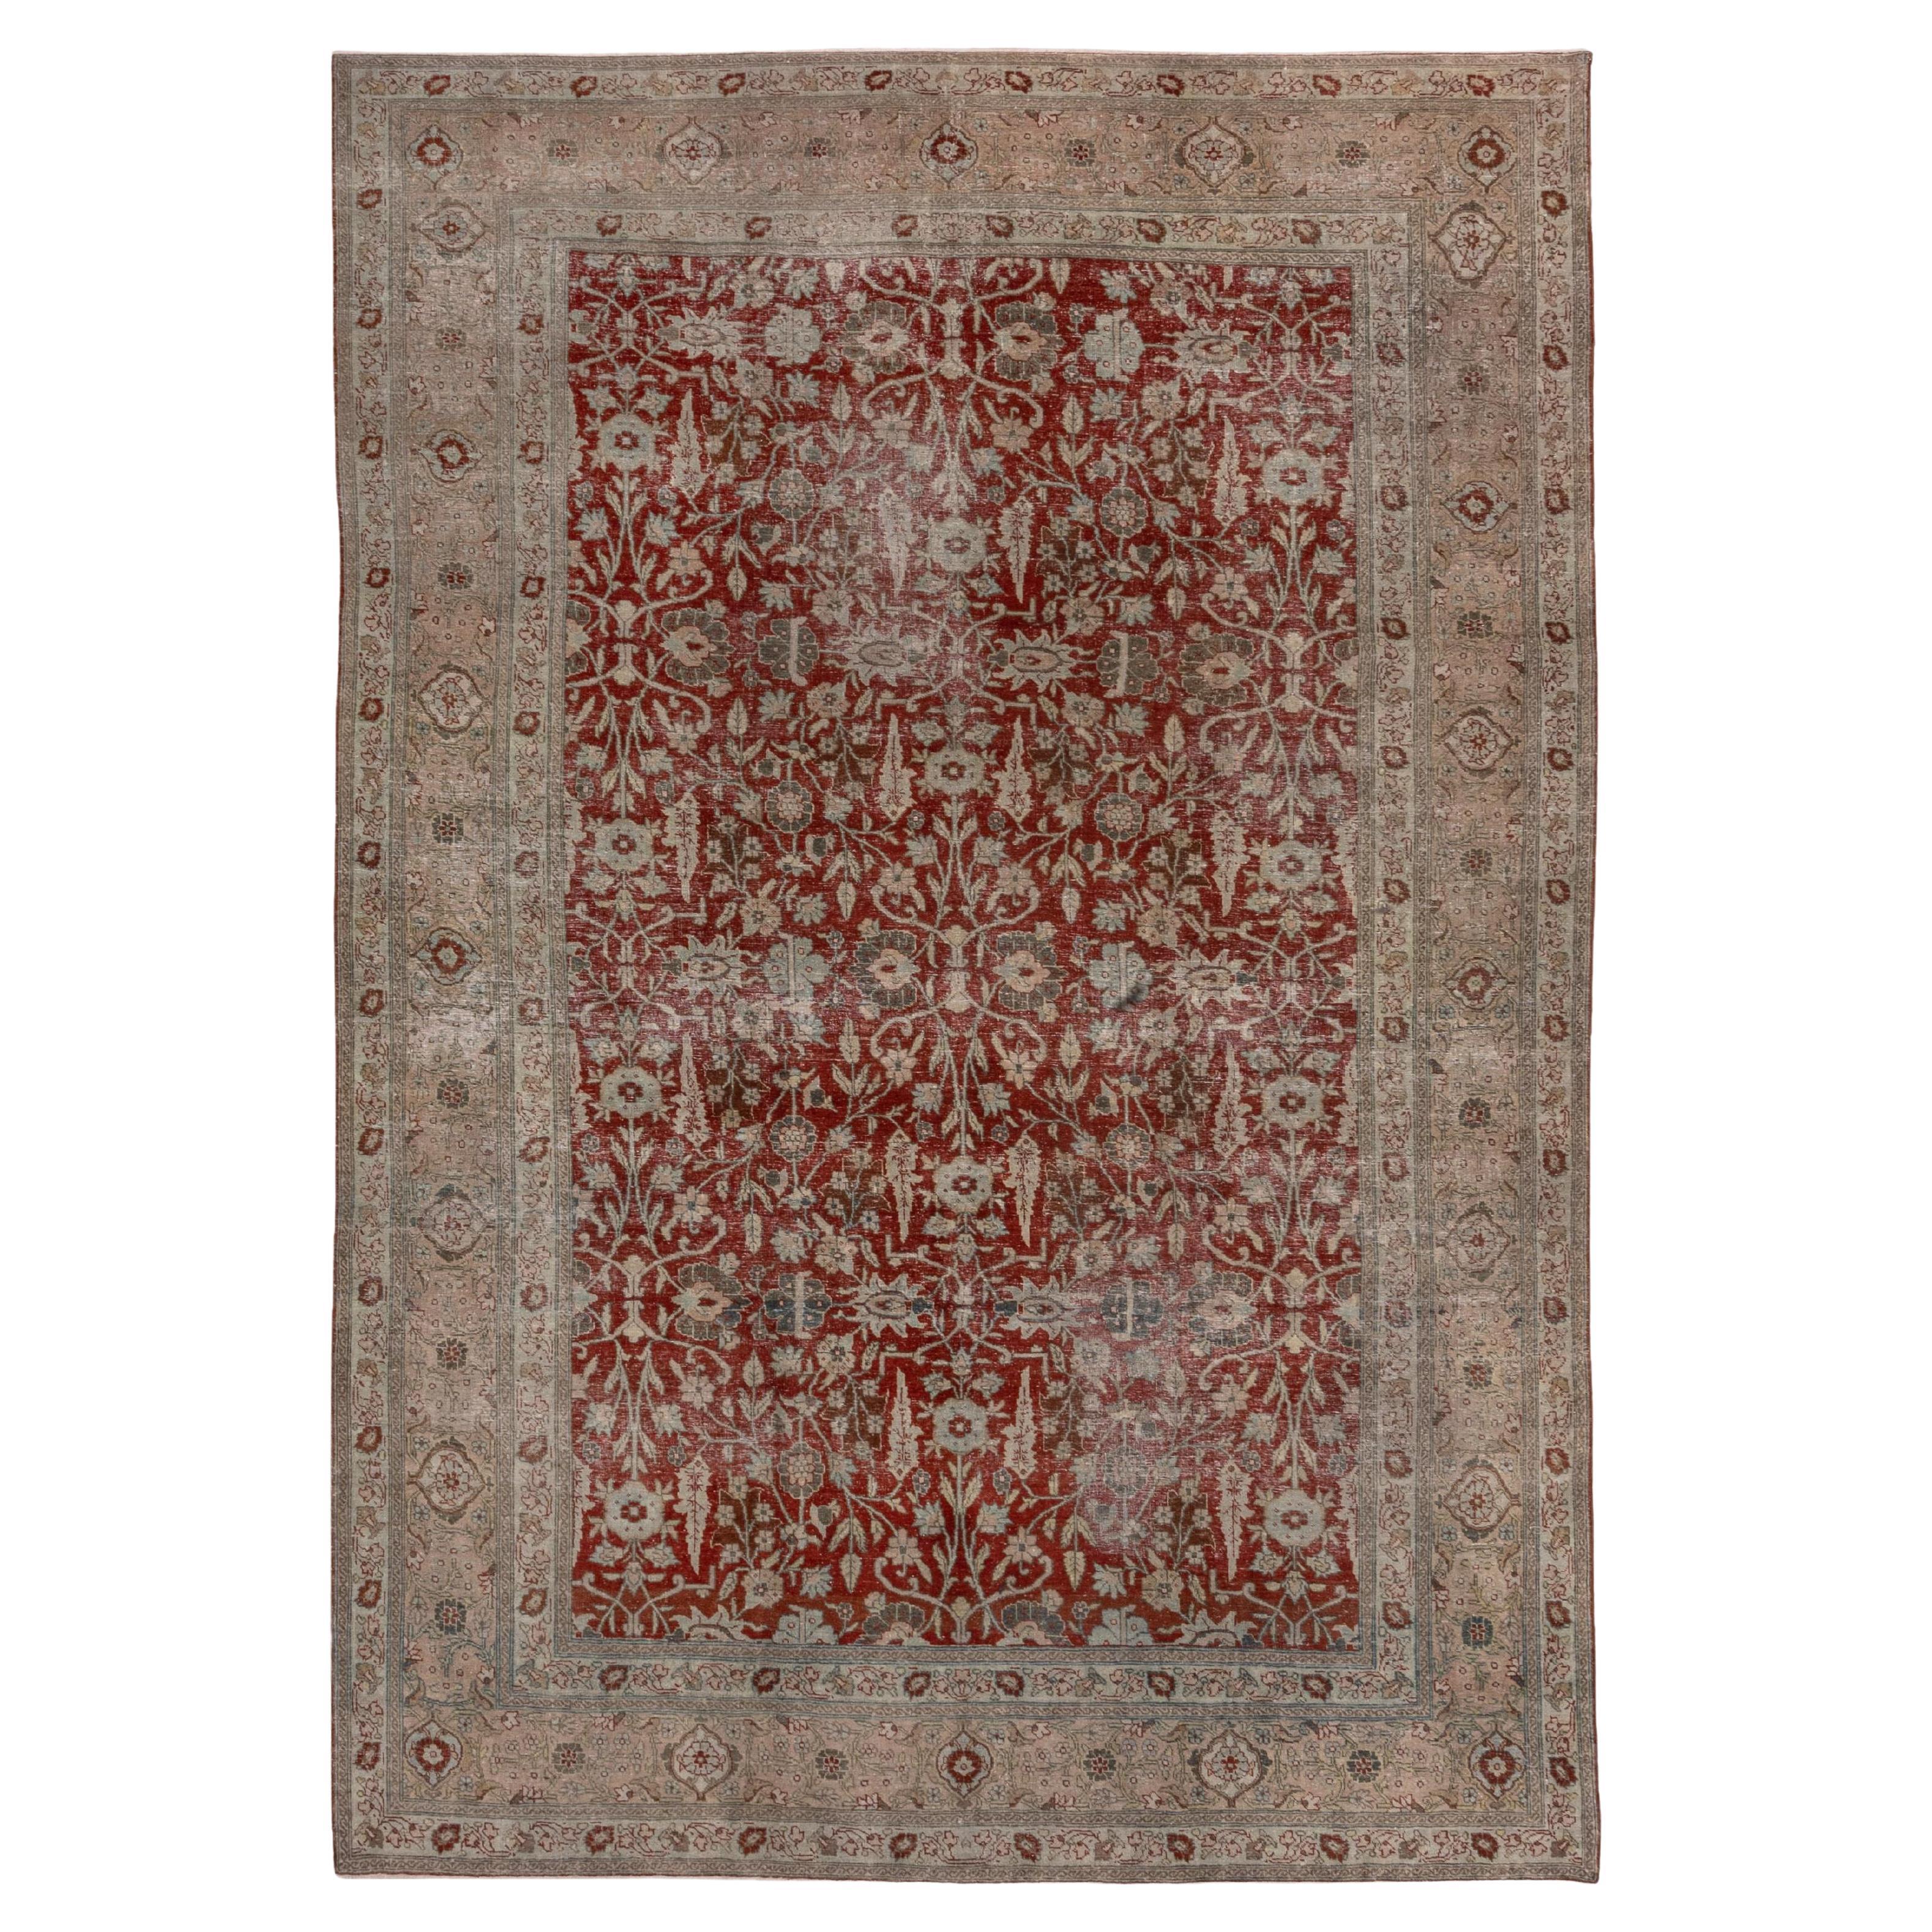 Schöner antiker persischer Täbris-Teppich, Rubinrotes Blumenfeld, weiche, getönte Bordüren im Angebot